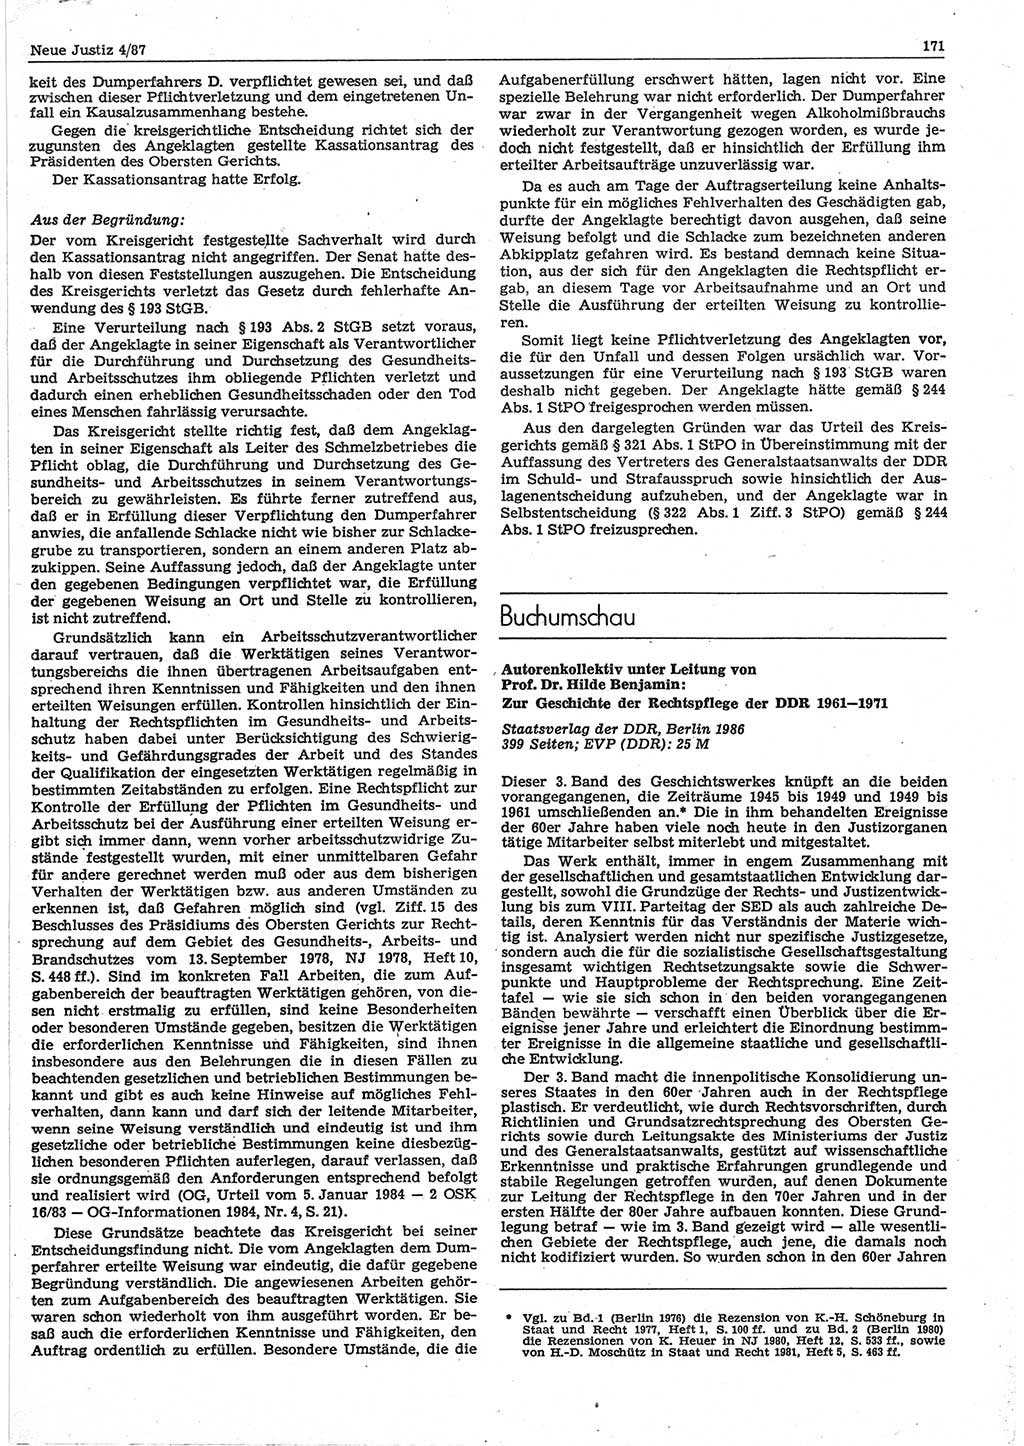 Neue Justiz (NJ), Zeitschrift für sozialistisches Recht und Gesetzlichkeit [Deutsche Demokratische Republik (DDR)], 41. Jahrgang 1987, Seite 171 (NJ DDR 1987, S. 171)